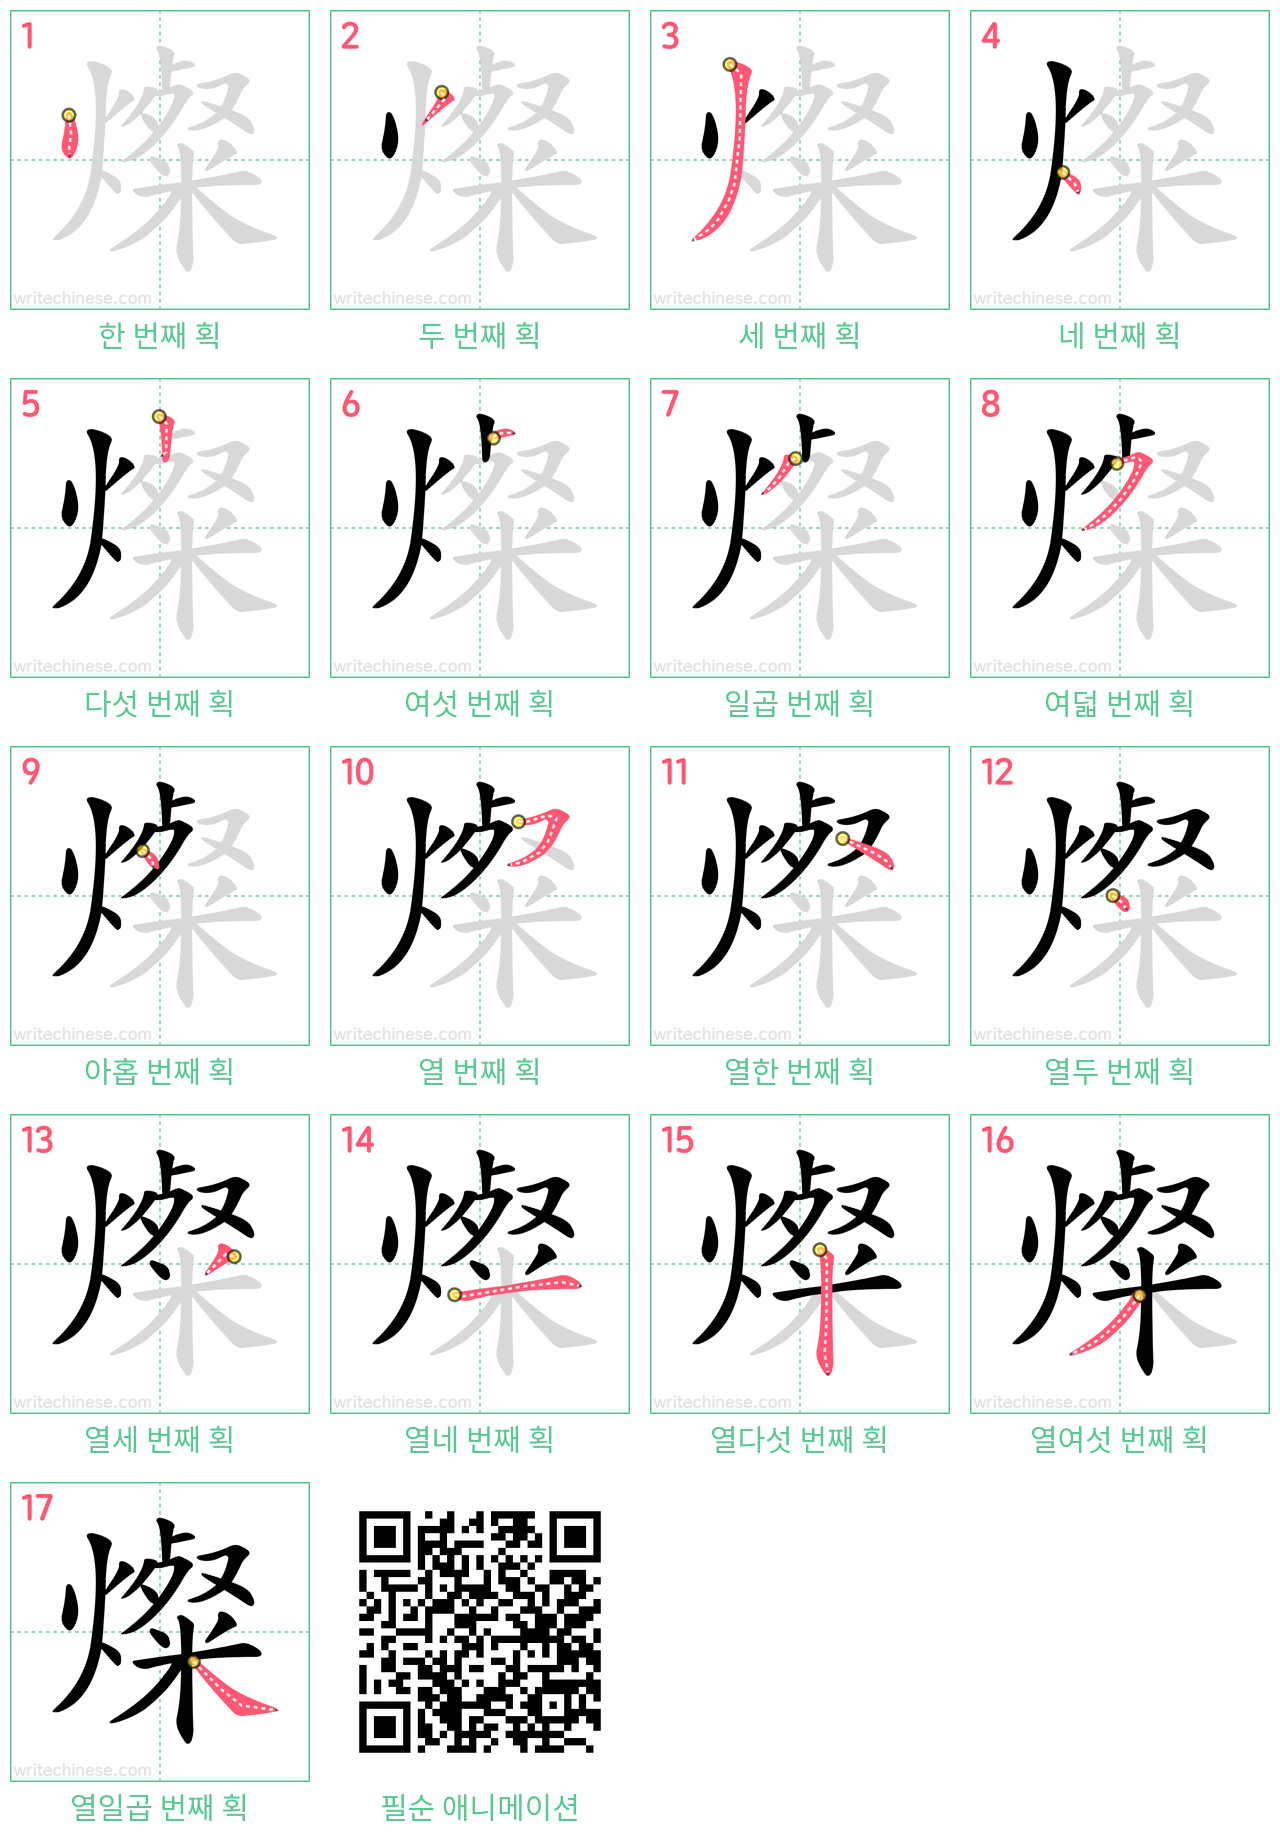 燦 step-by-step stroke order diagrams